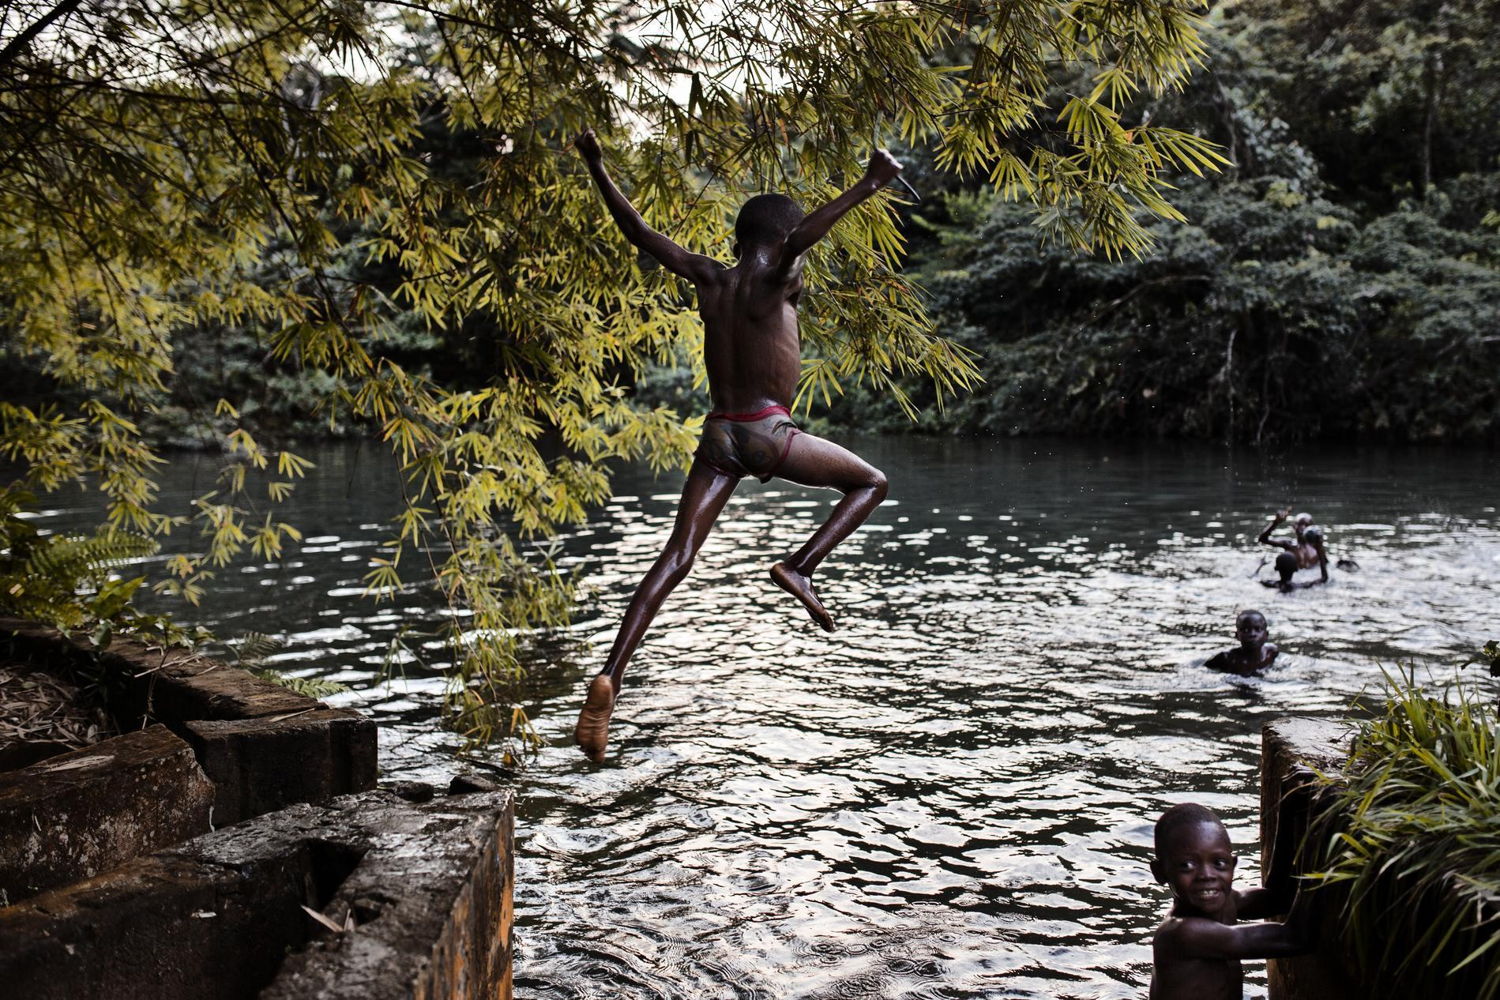 "Jump" by Joris Hermans